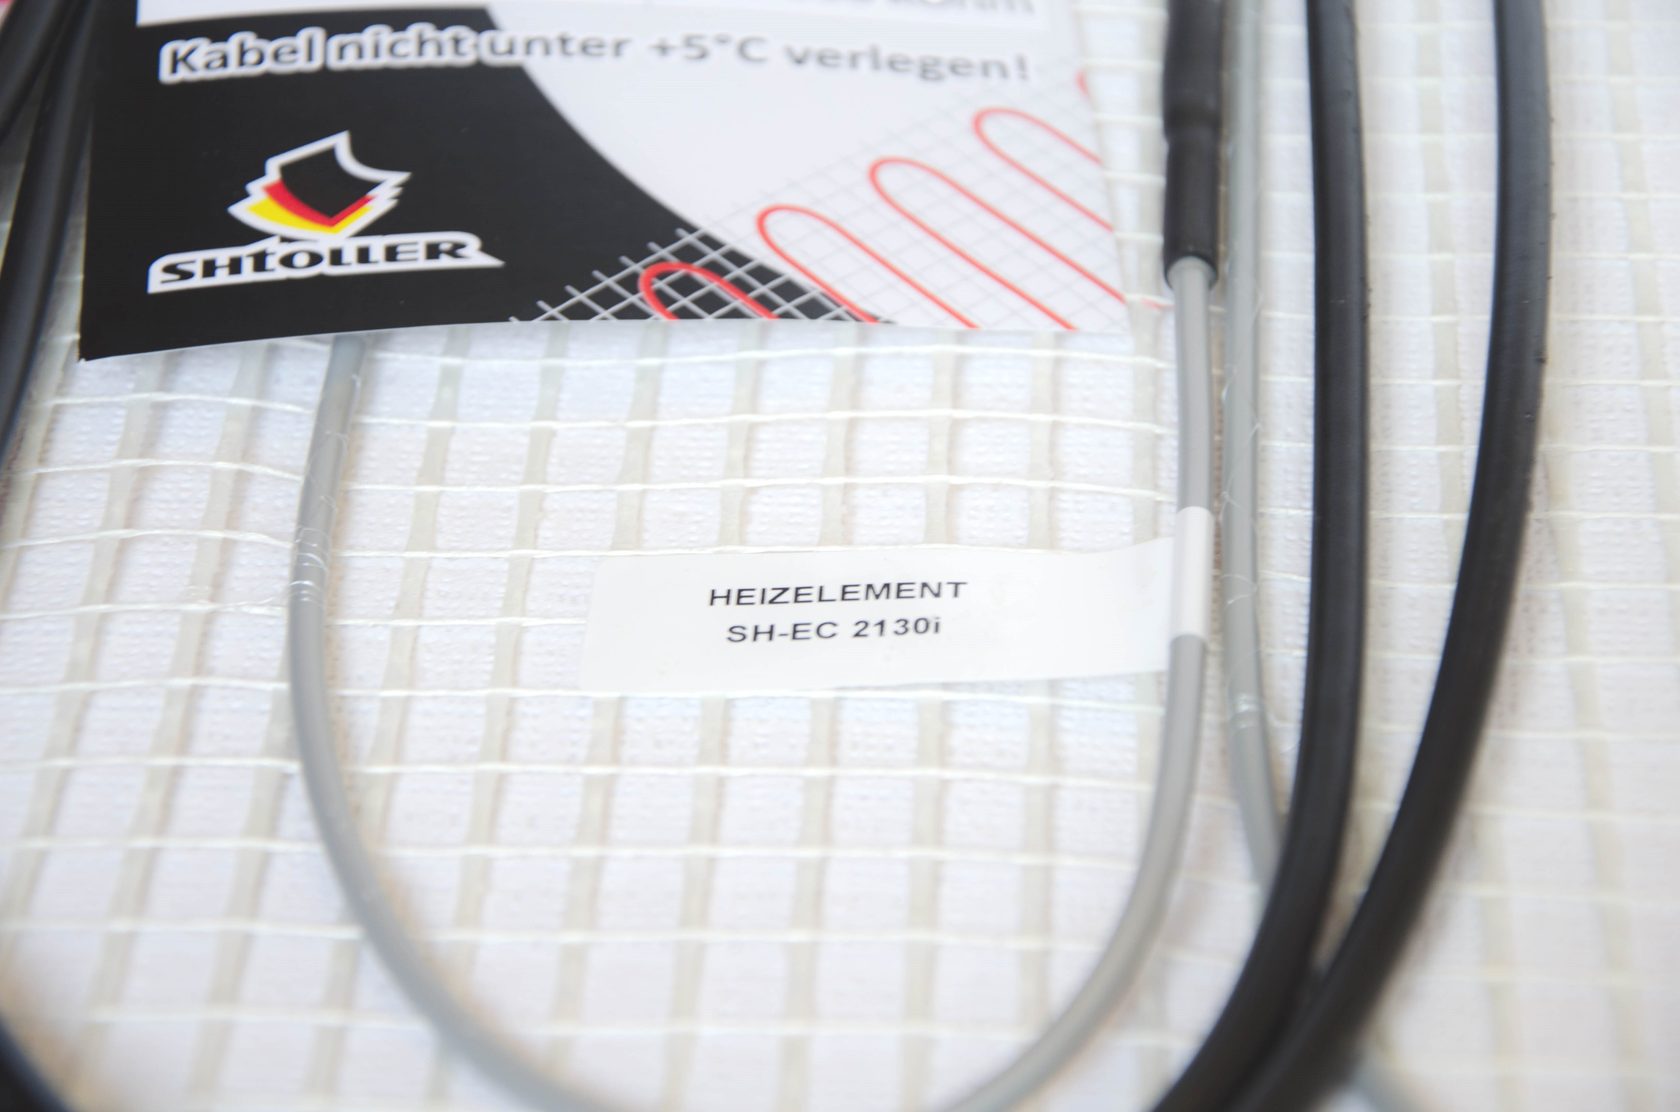 Електрична тепла підлога Shtoller SH-EC 2160i відгуки - зображення 5